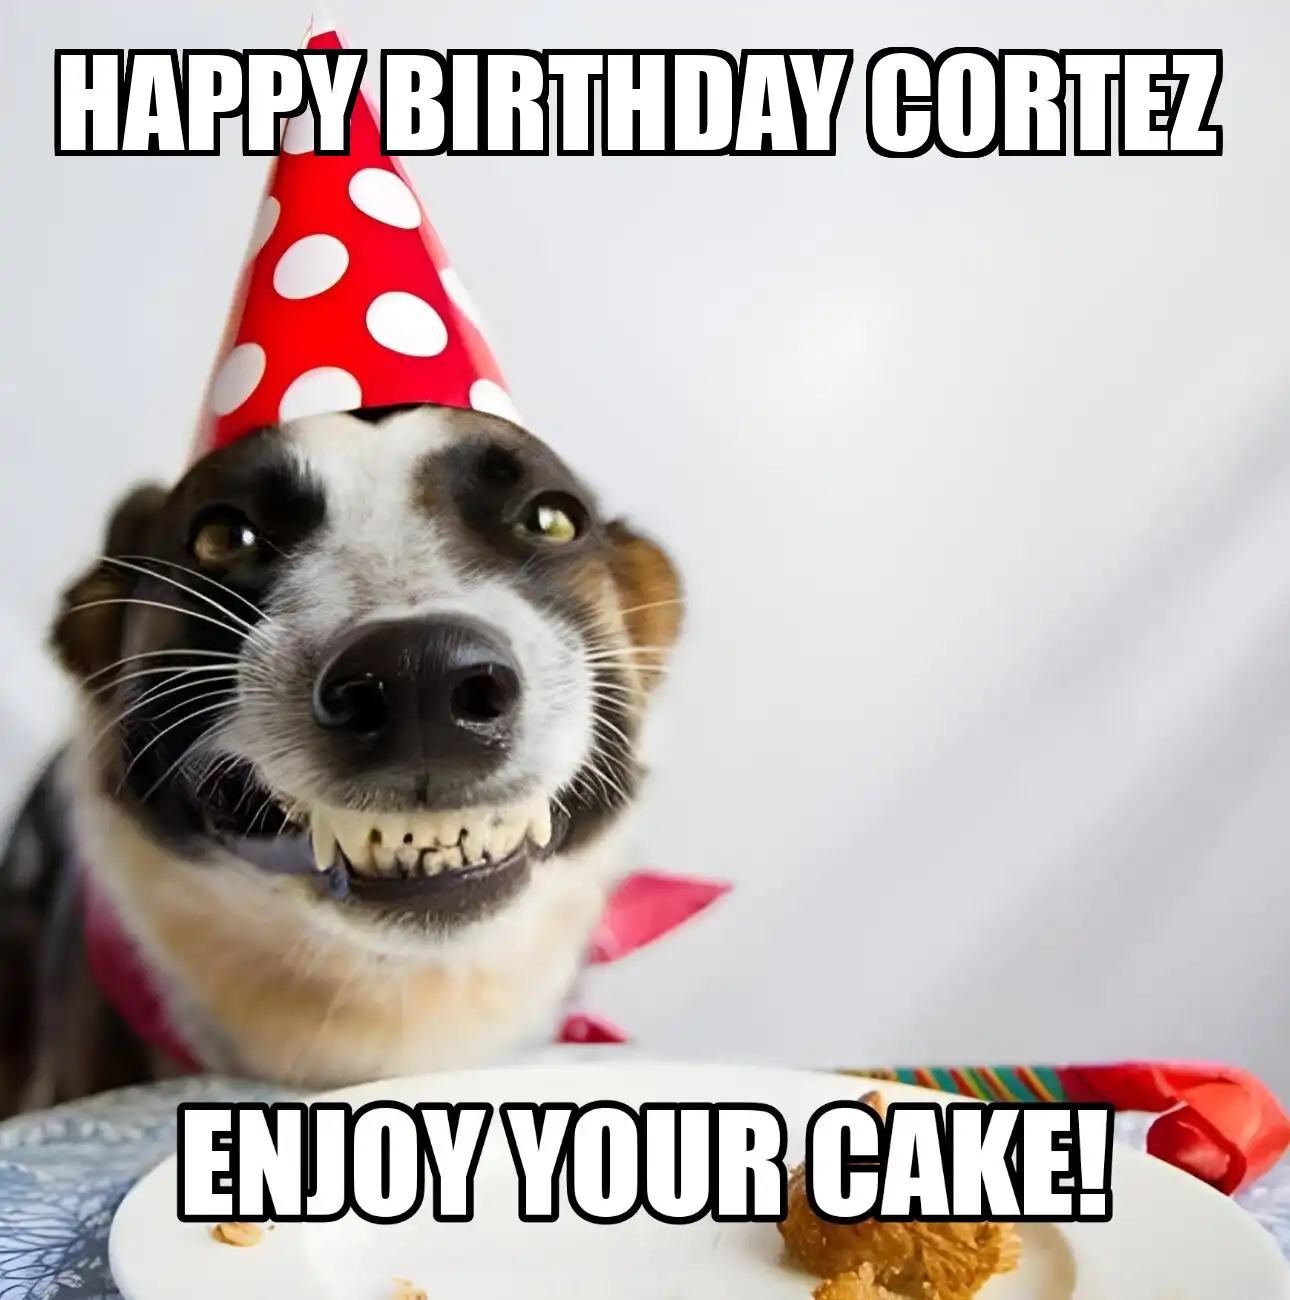 Happy Birthday Cortez Enjoy Your Cake Dog Meme